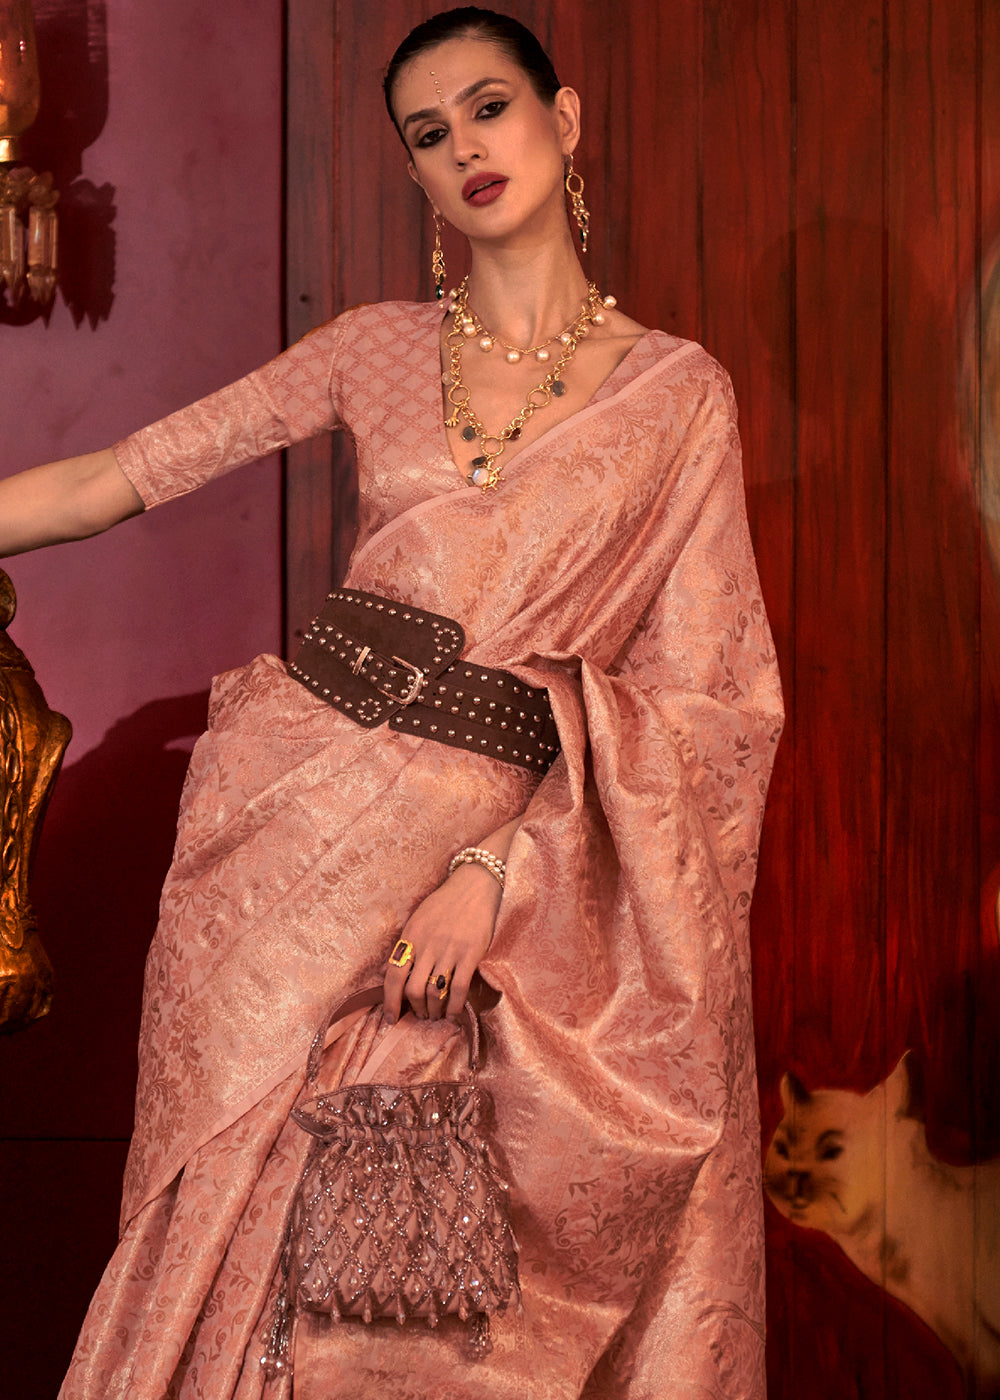 Shades Of Pink Zari Woven Banarasi Brocade Silk Saree: Top Pick